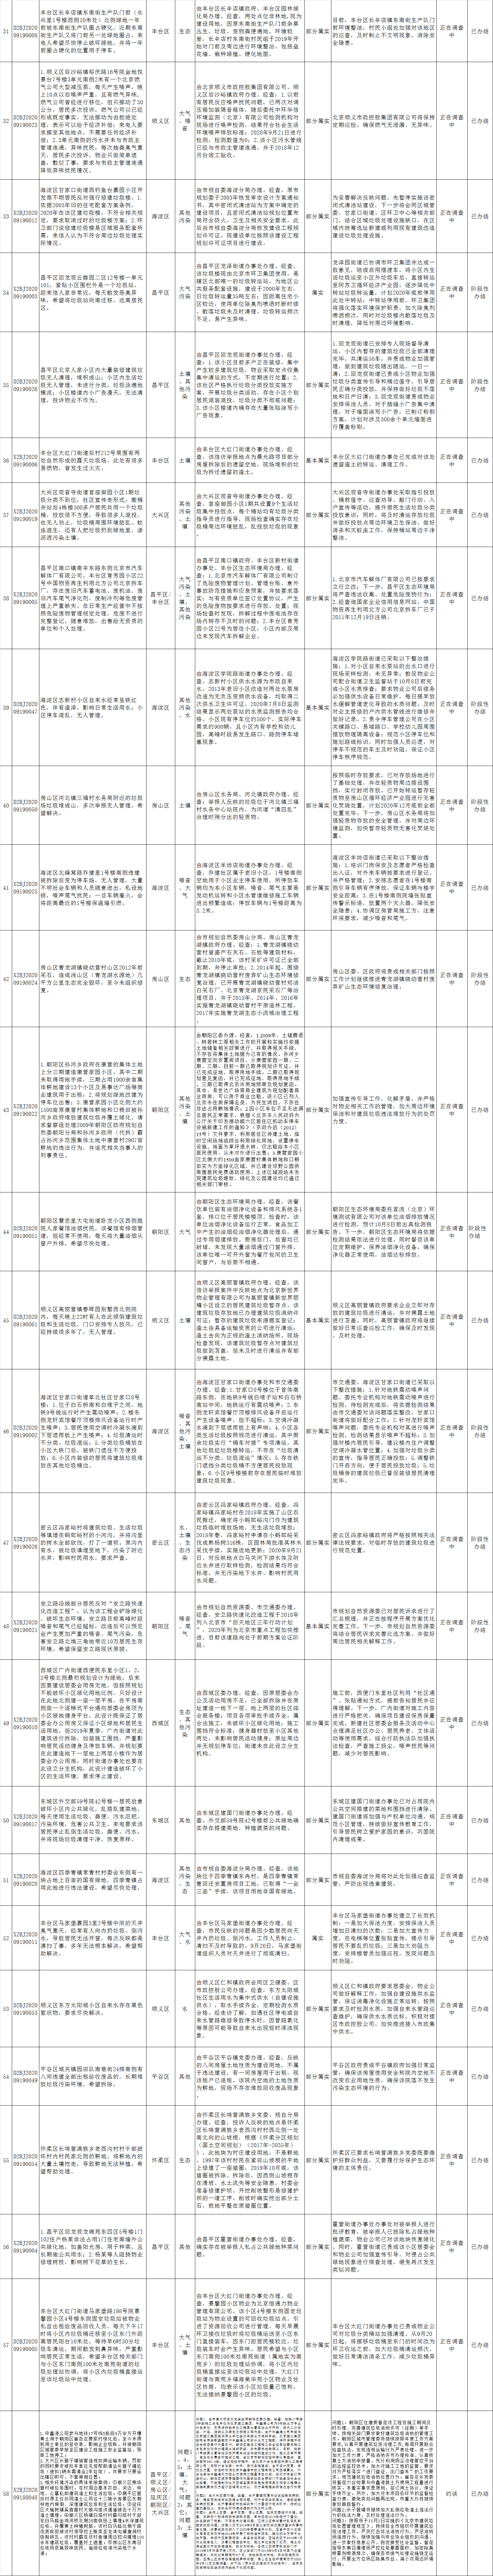 北京市群众信访举报转办和边督边改公开情况一览表(第二十批)